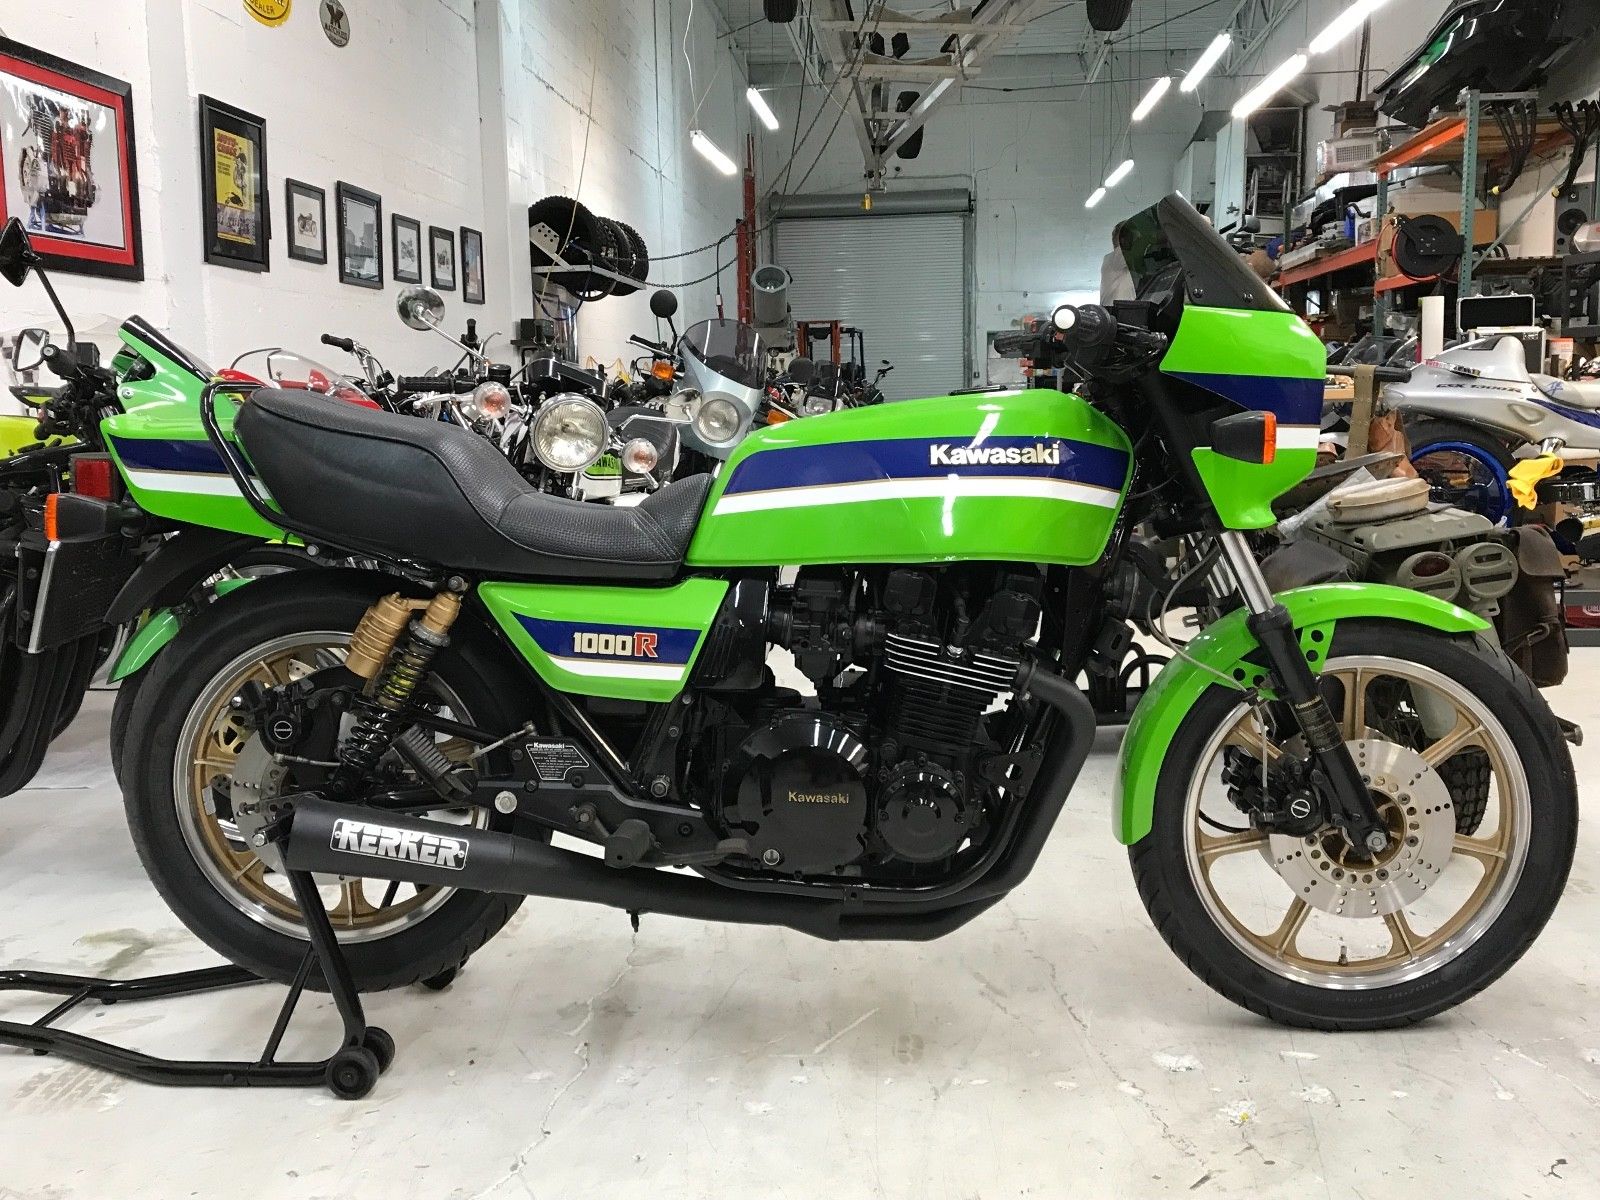 Motocyclettes Kawasaki : Top 5 des modèles les plus chers vendus sur eBay